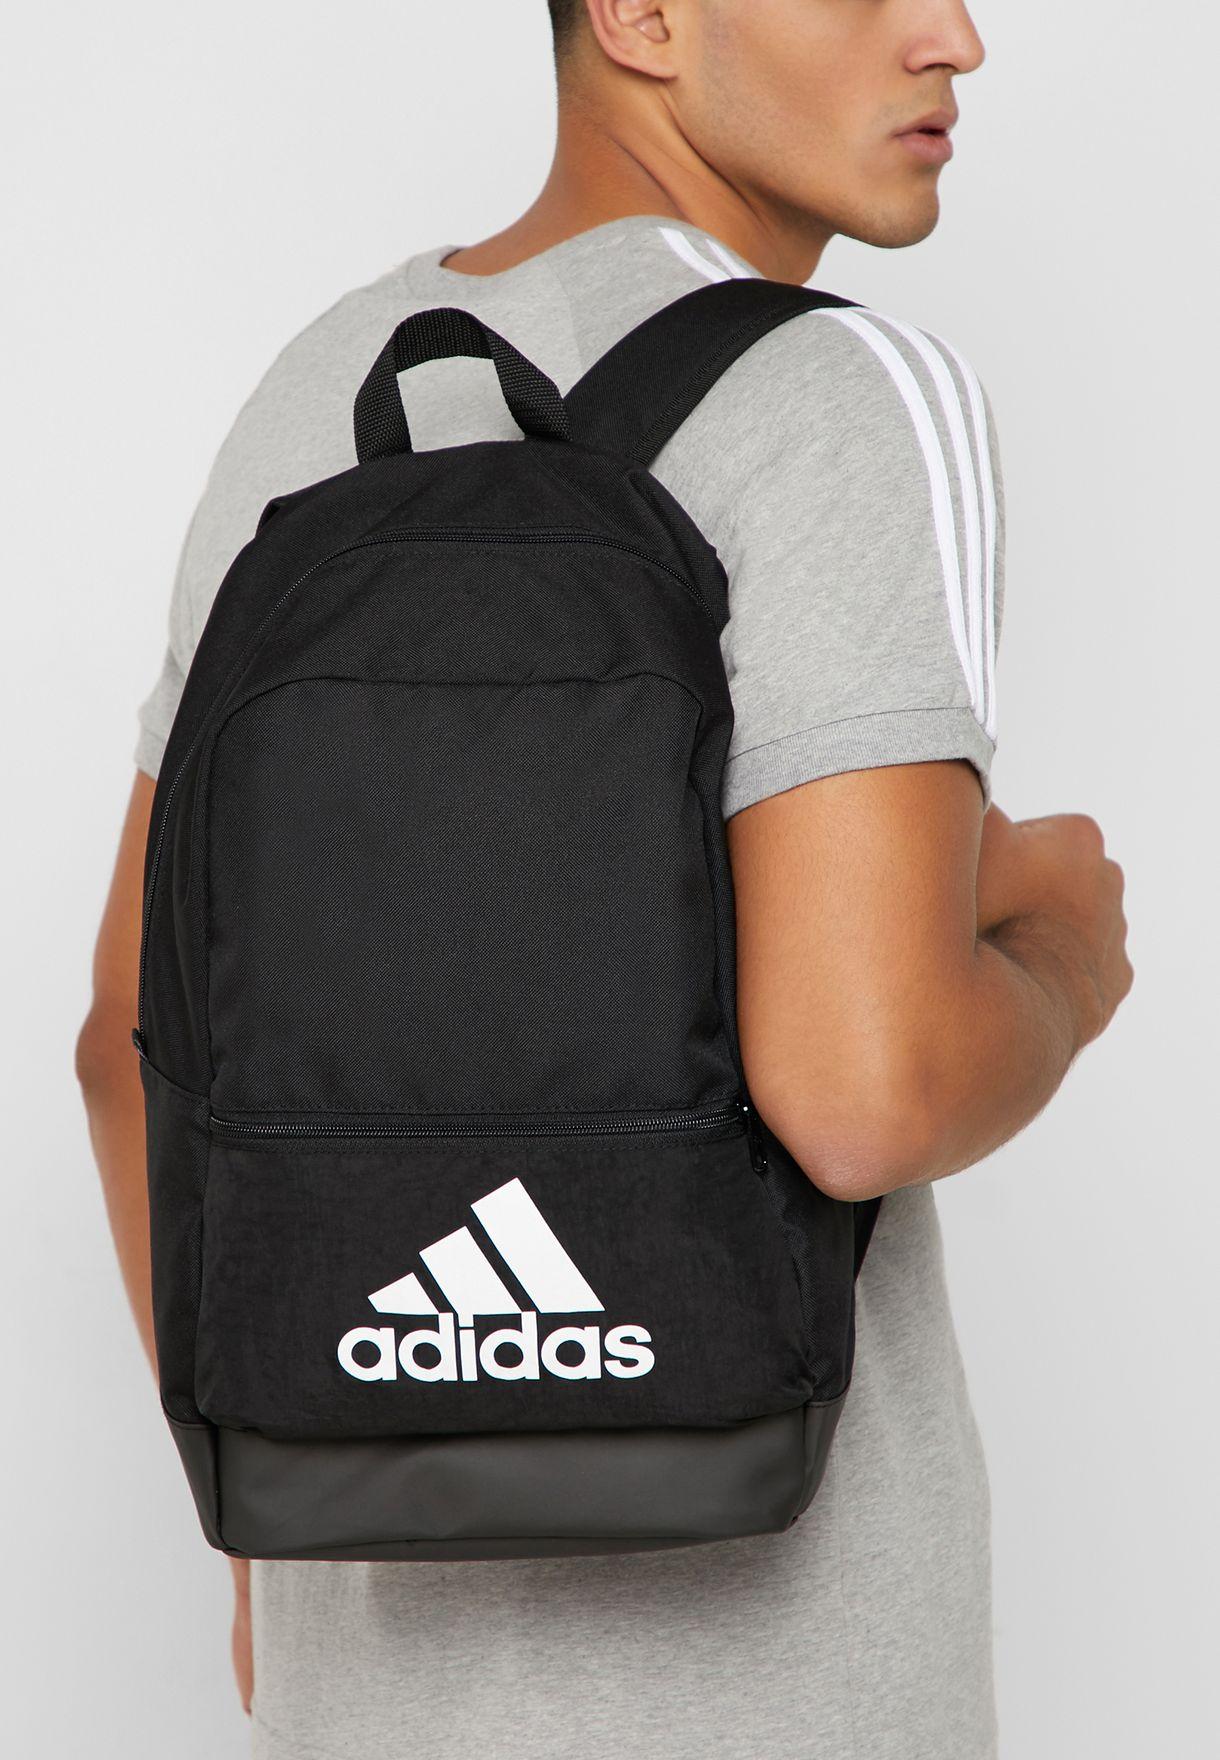 Adidas กระเป๋าเป้สะพายหลัง อาดิดาส  TR Backpack Classic Bos DT2628 BK(900)